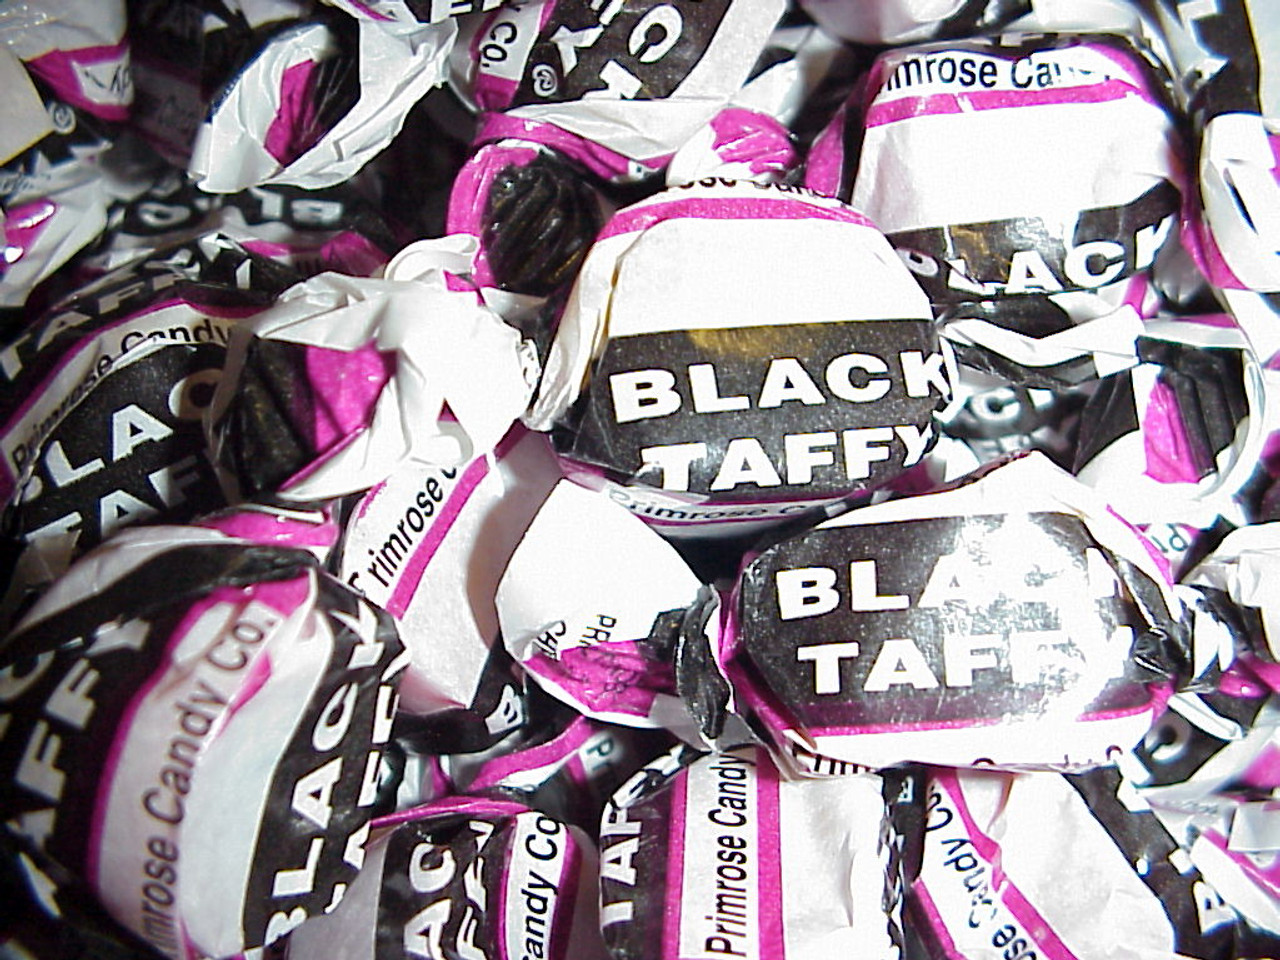 Black horse candy (Bonbon aphrodisiaque)